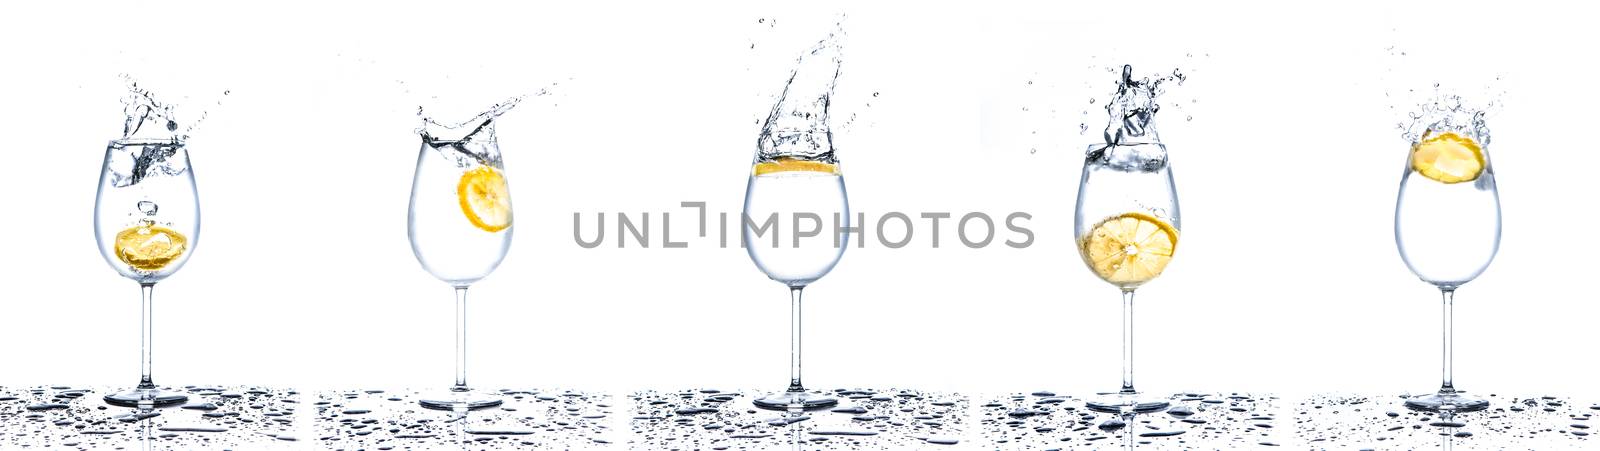 Lemon splashing into glasses full of water on white background